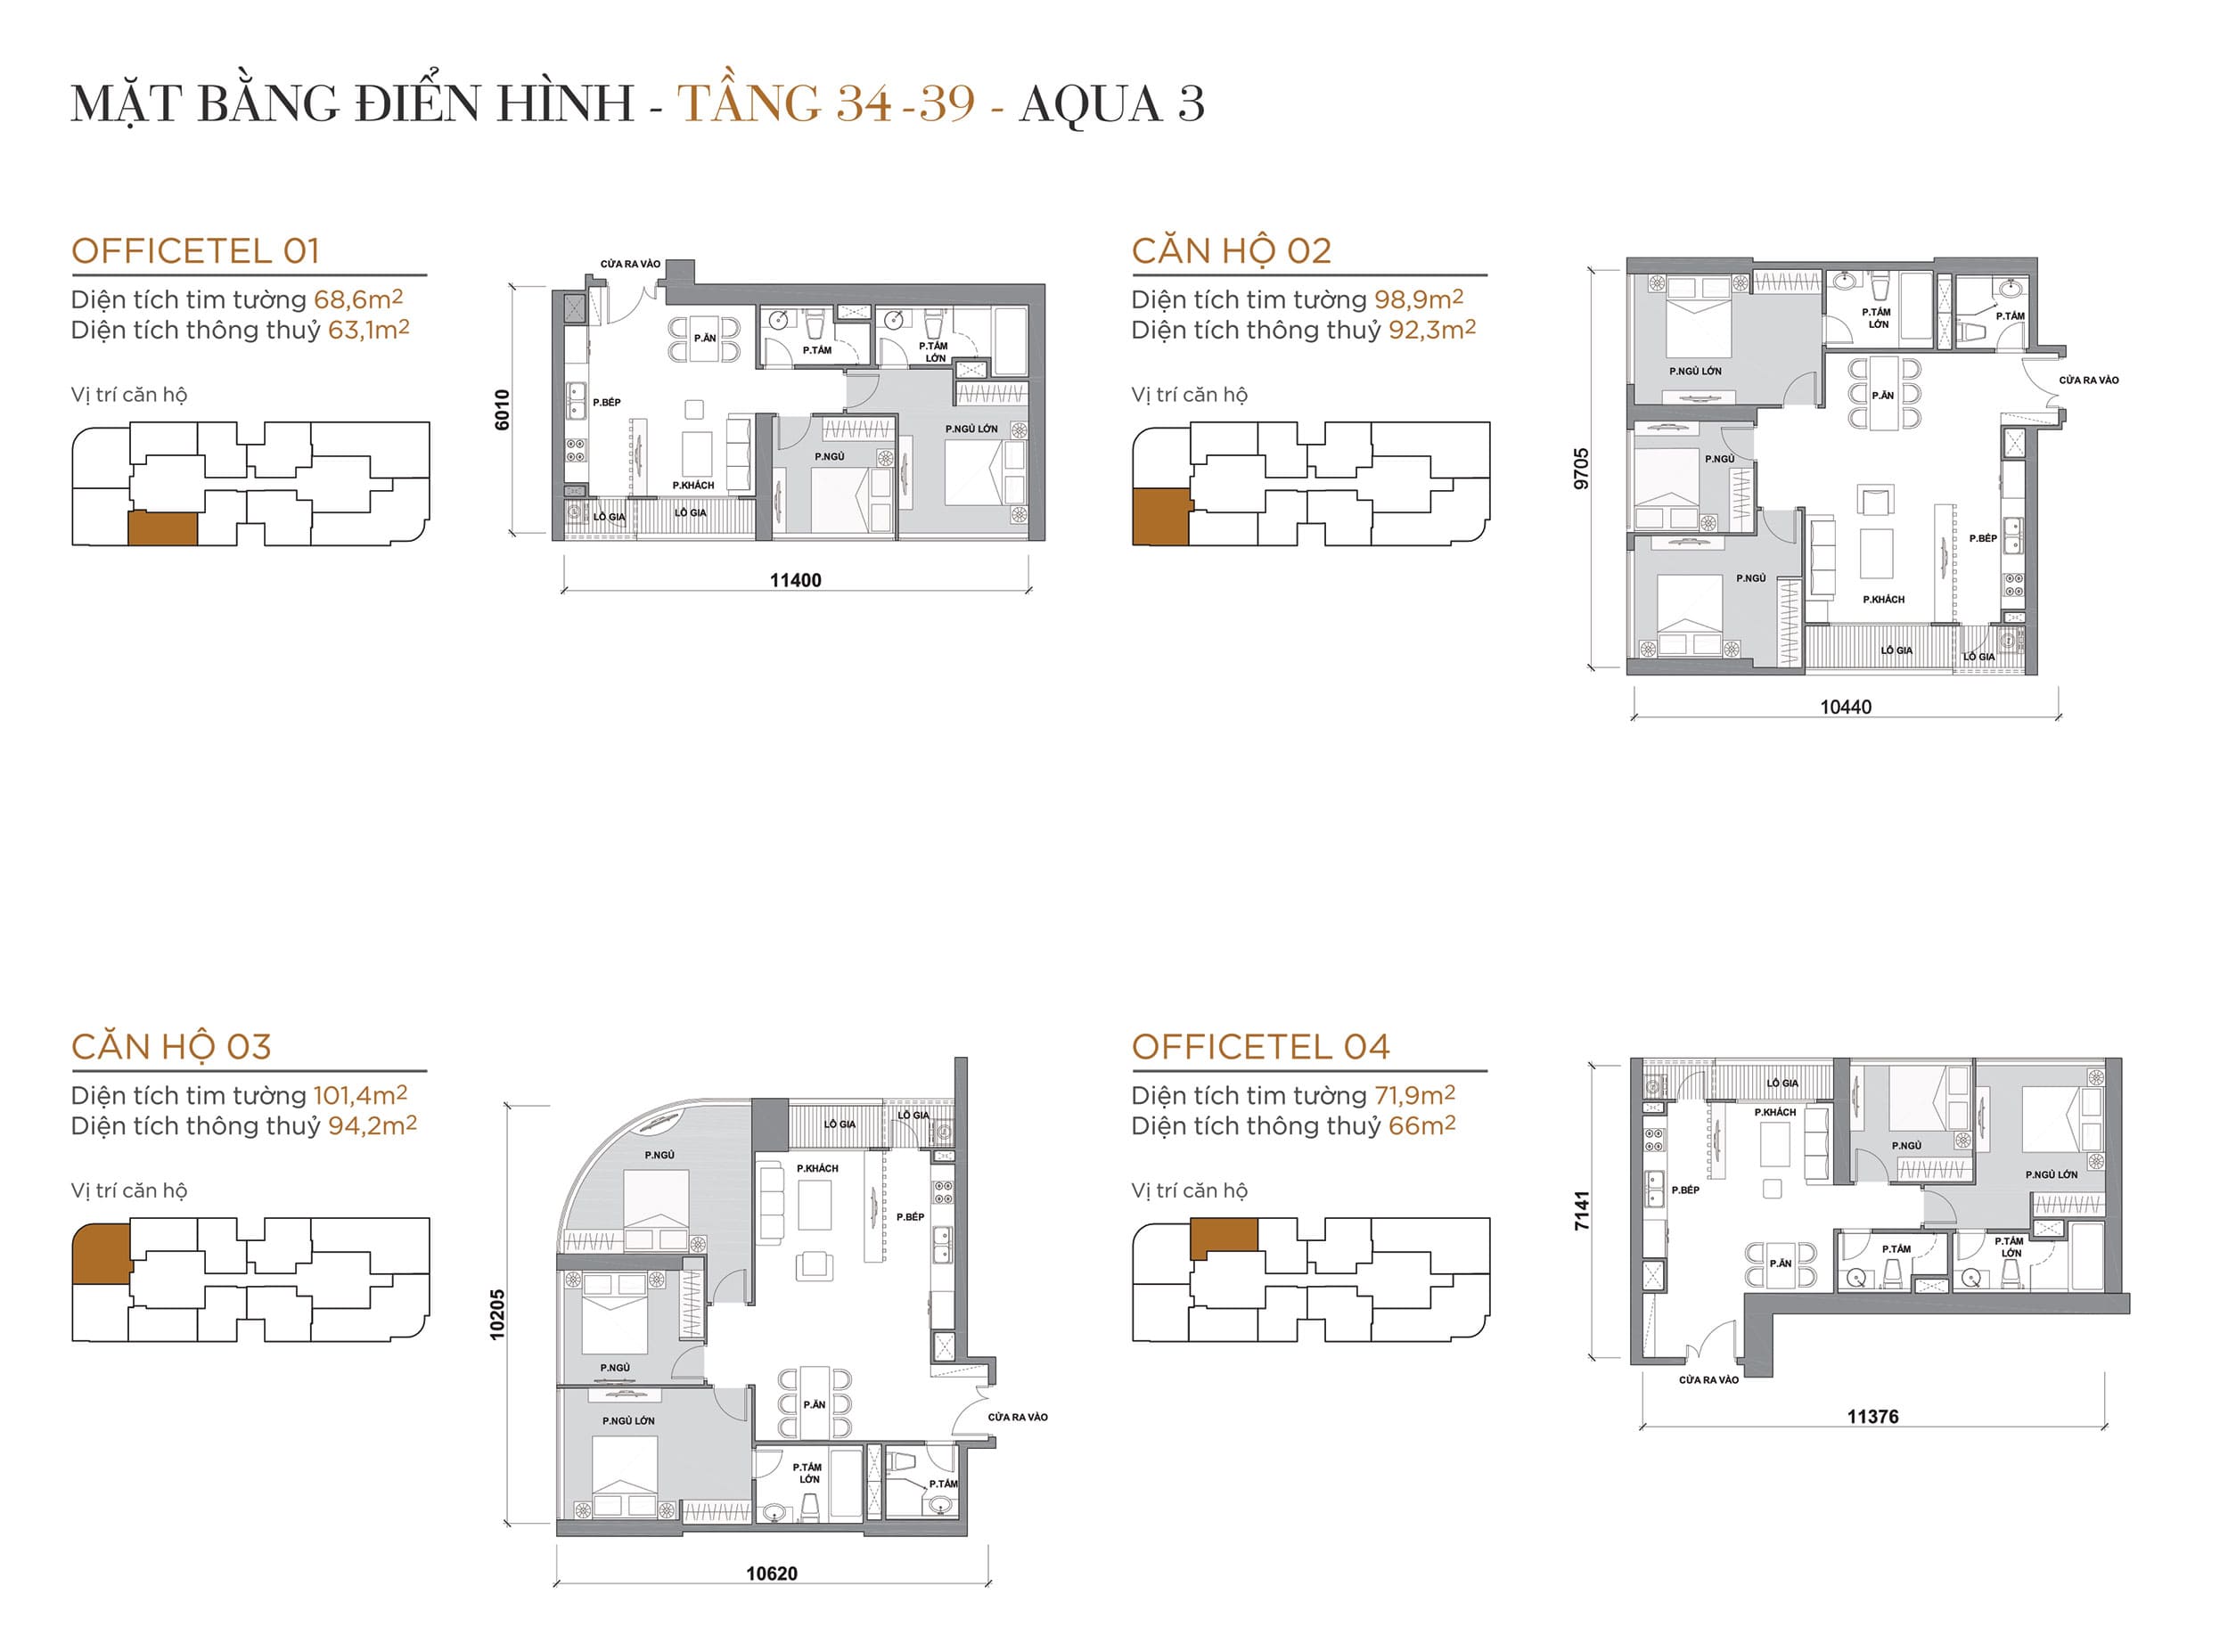 Layout thiết kế điển hình Tầng 34 đến Tầng 39 Tòa Aqua 3 loại Officetel 01, Căn hộ 02, Căn hộ 03, Officetel 04.